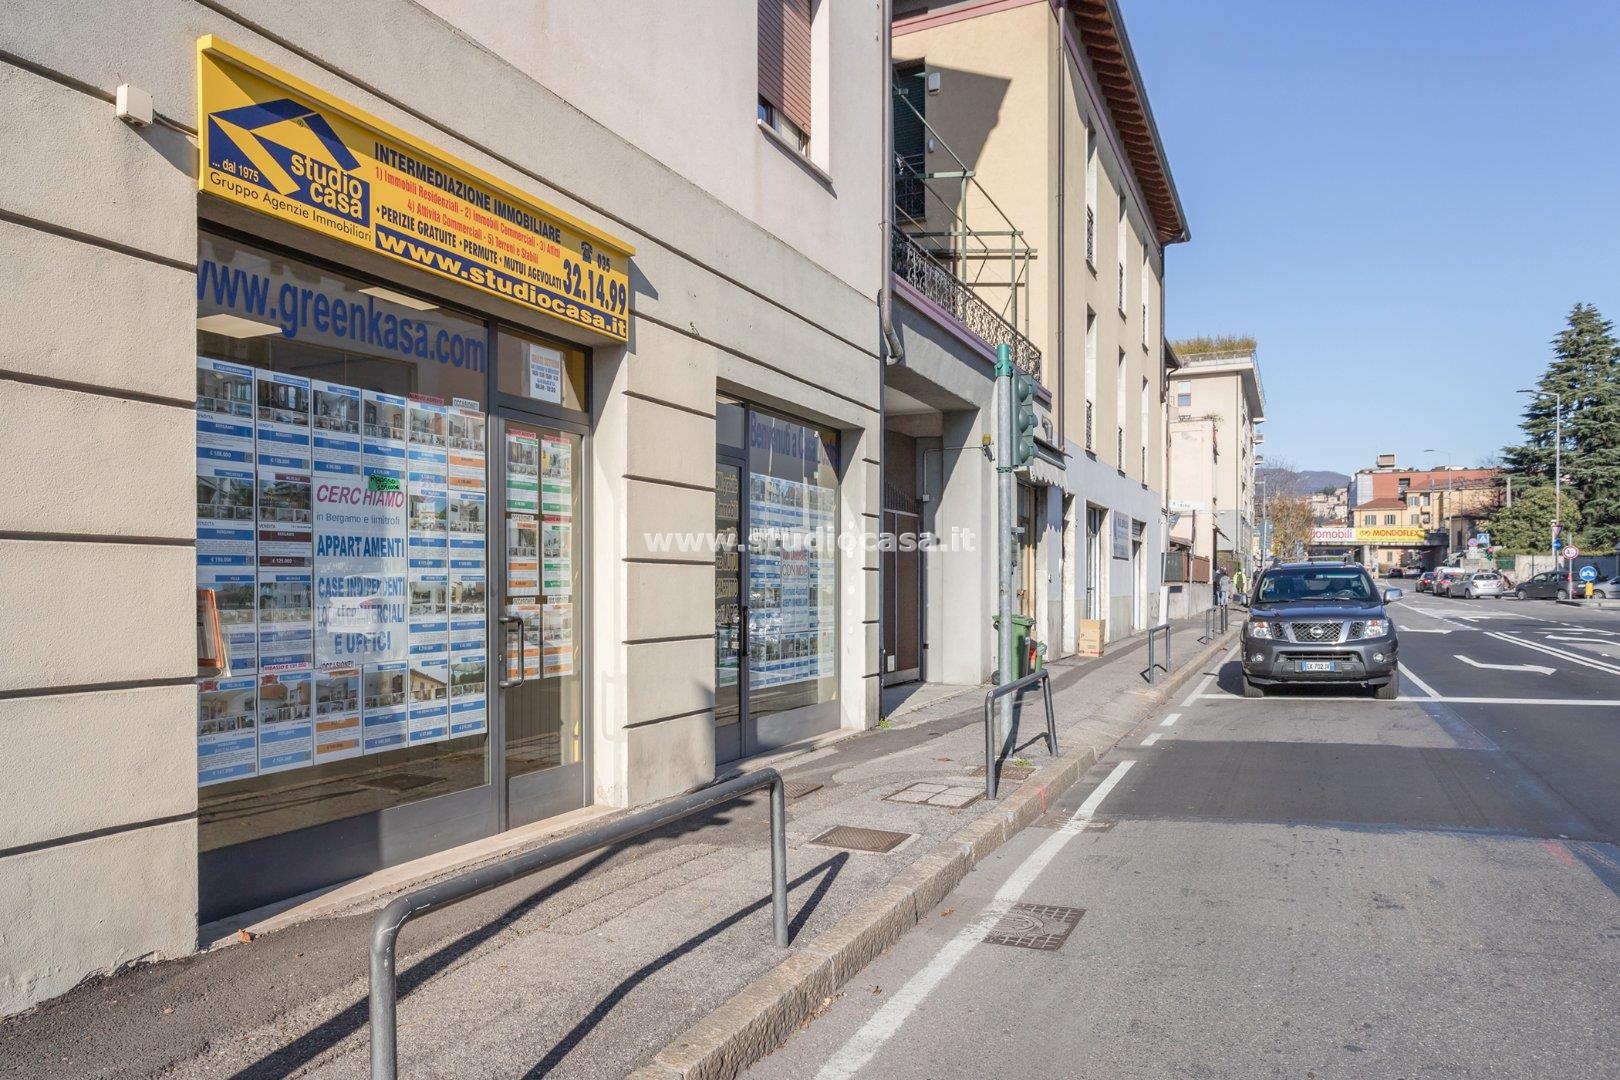 Negozio in vendita a Bergamo